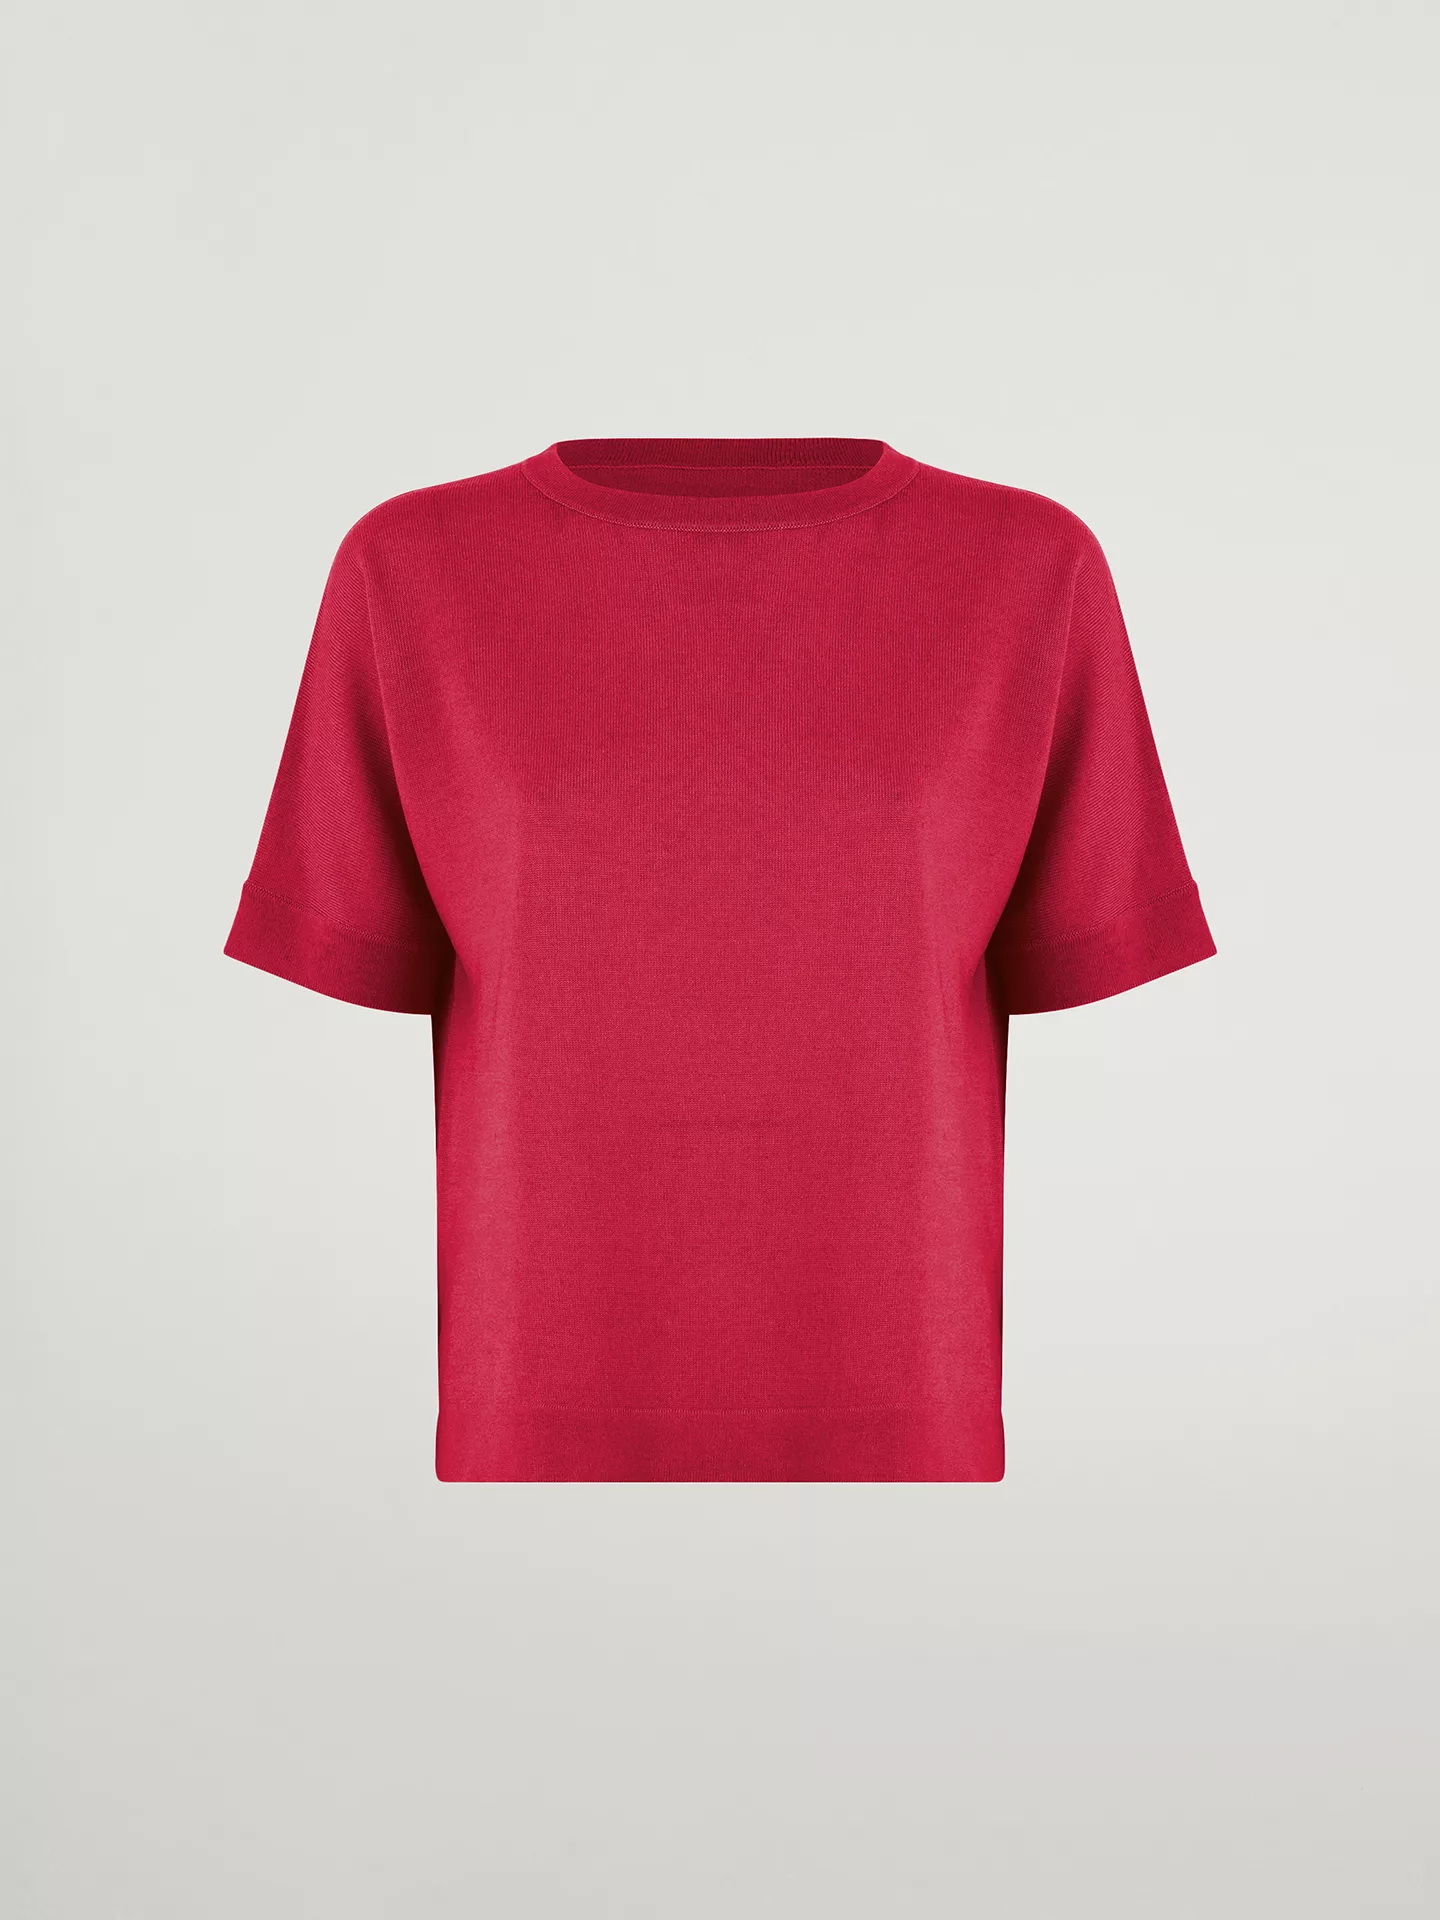 Wolford - Merino Blend Top Short Sleeves, Frau, lipstick red, Größe: XS günstig online kaufen